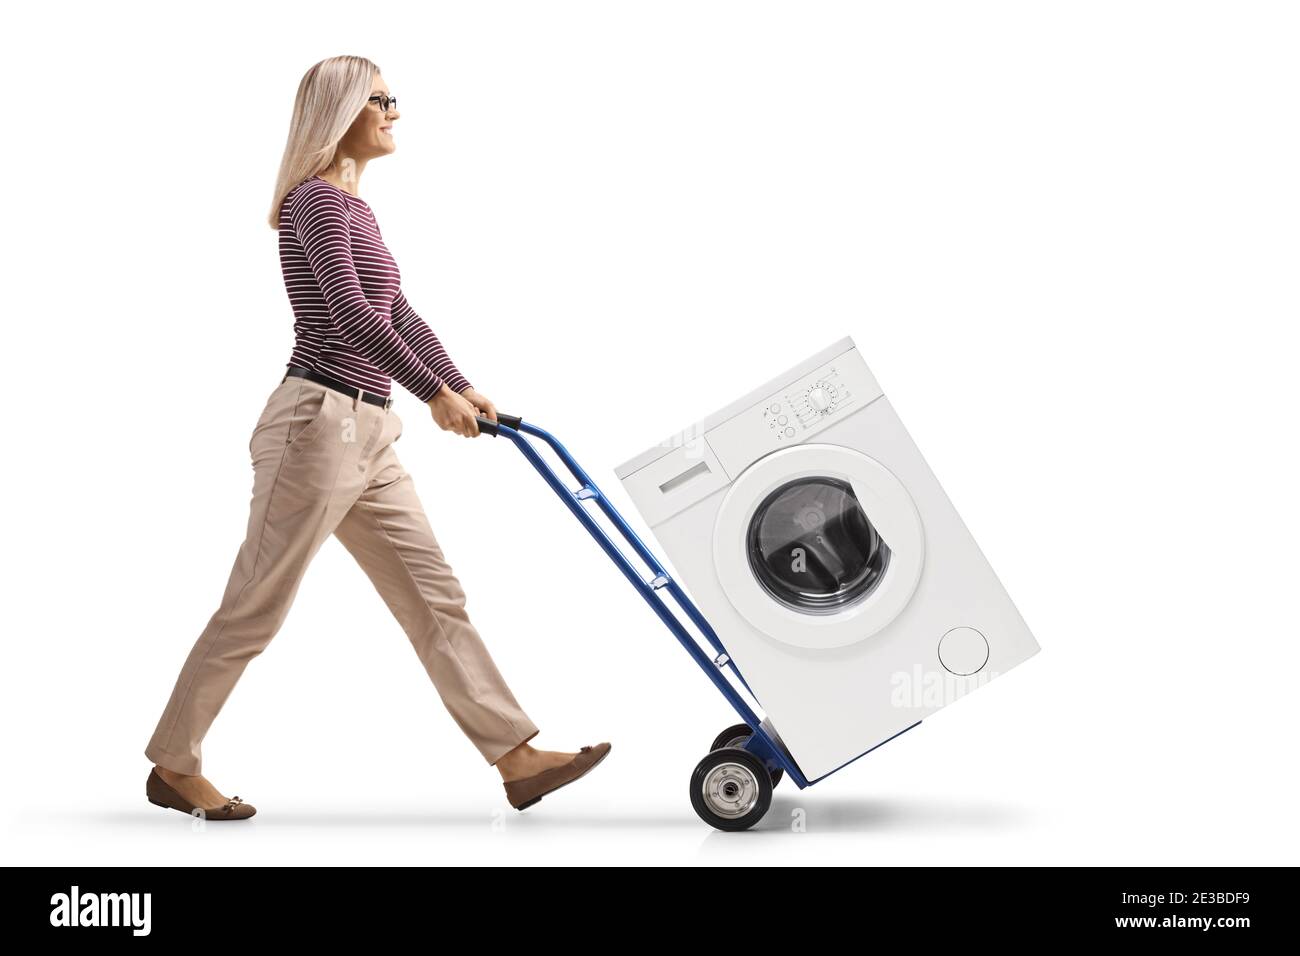 Foto di profilo a lunghezza intera di una giovane donna che spinge un lavatrice con carrello isolato su fondo bianco Foto Stock